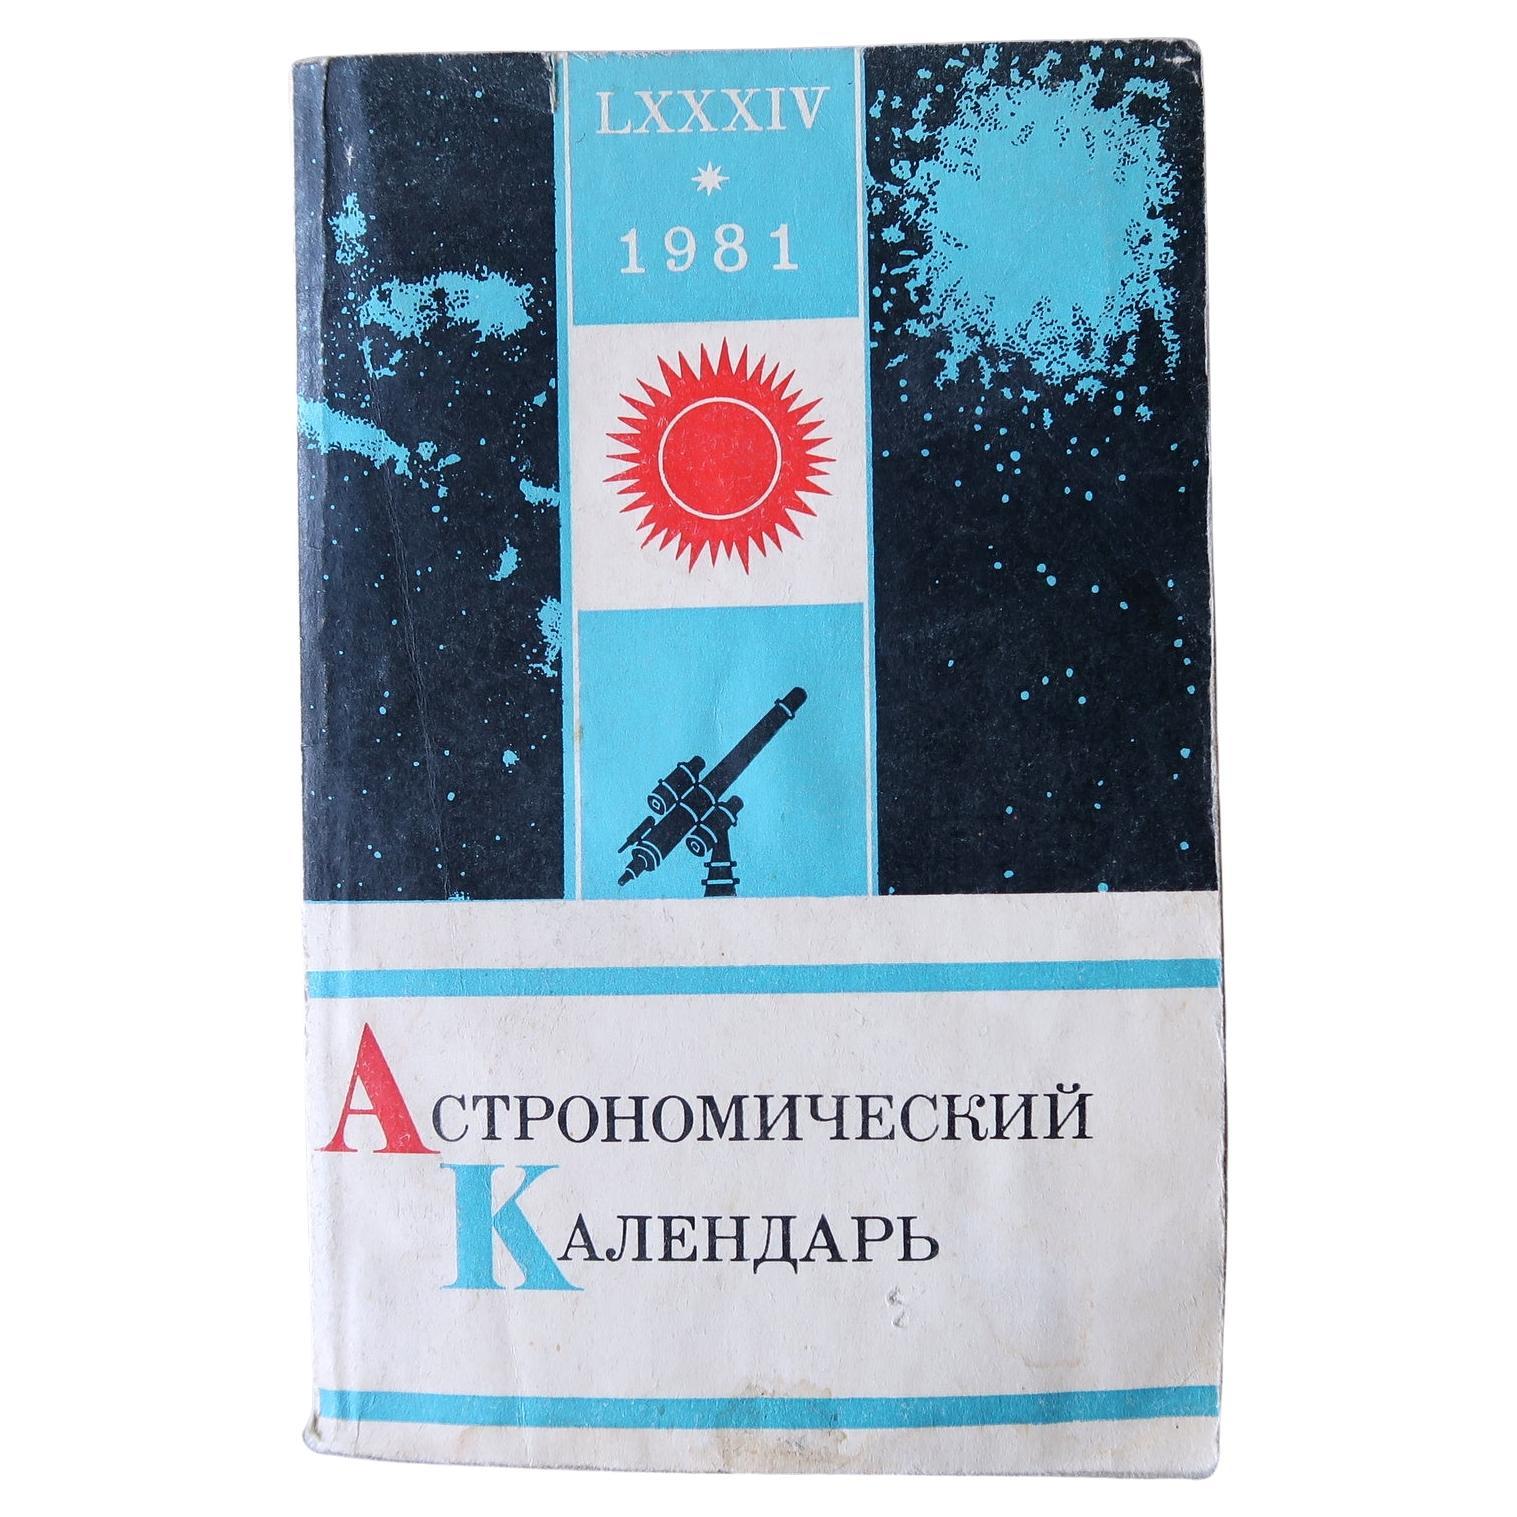 Astronomischer Almanach im Vintage-Stil: Himmelswissenschaften für 1981, UdSSR, 1J137